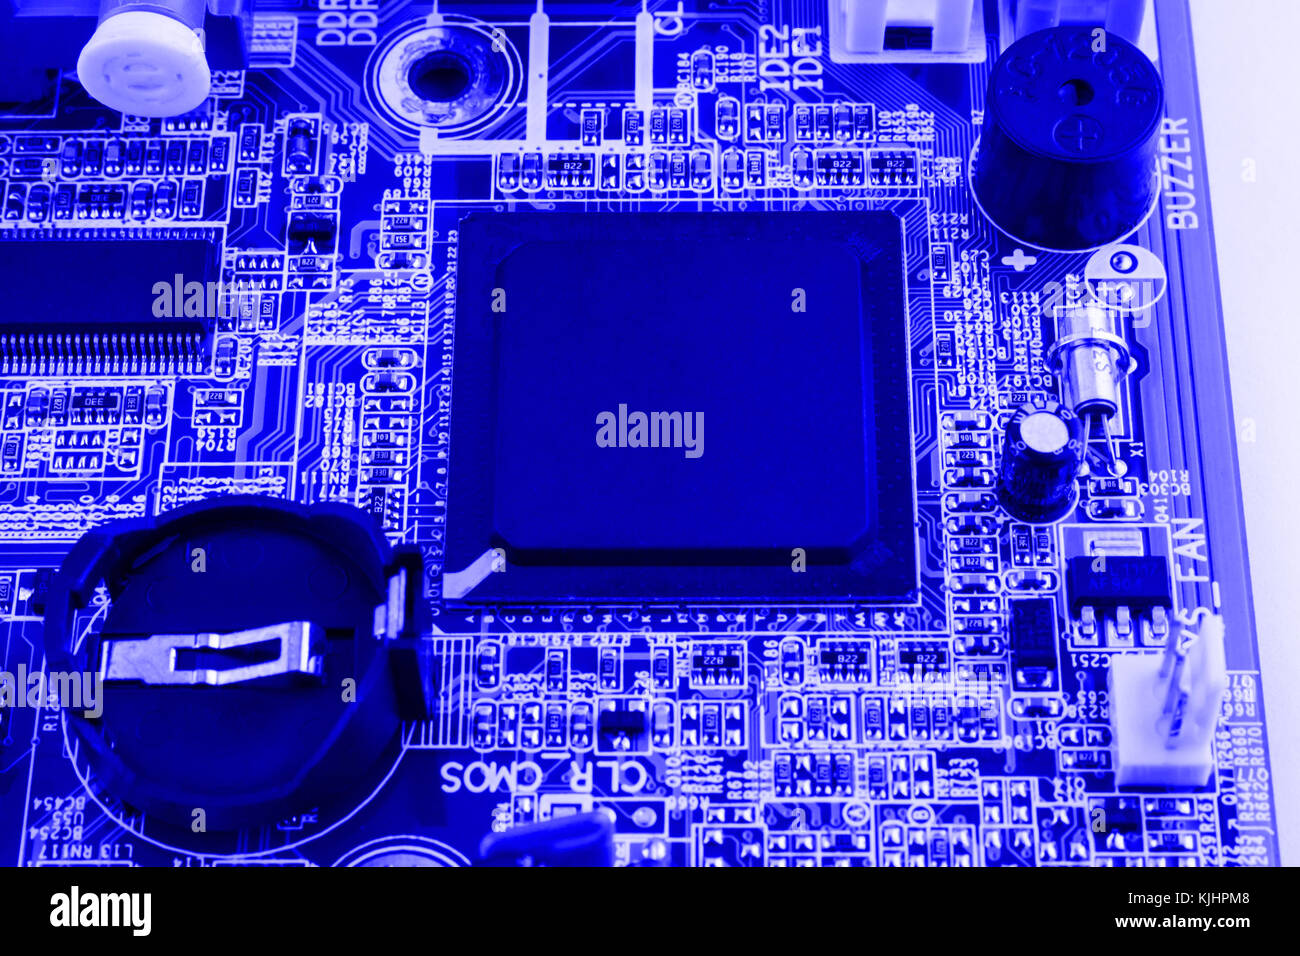 Elektronik Komponenten auf modernen PC-Mainboard mit RAM-Steckplatz und  CPU-Sockel Stockfotografie - Alamy